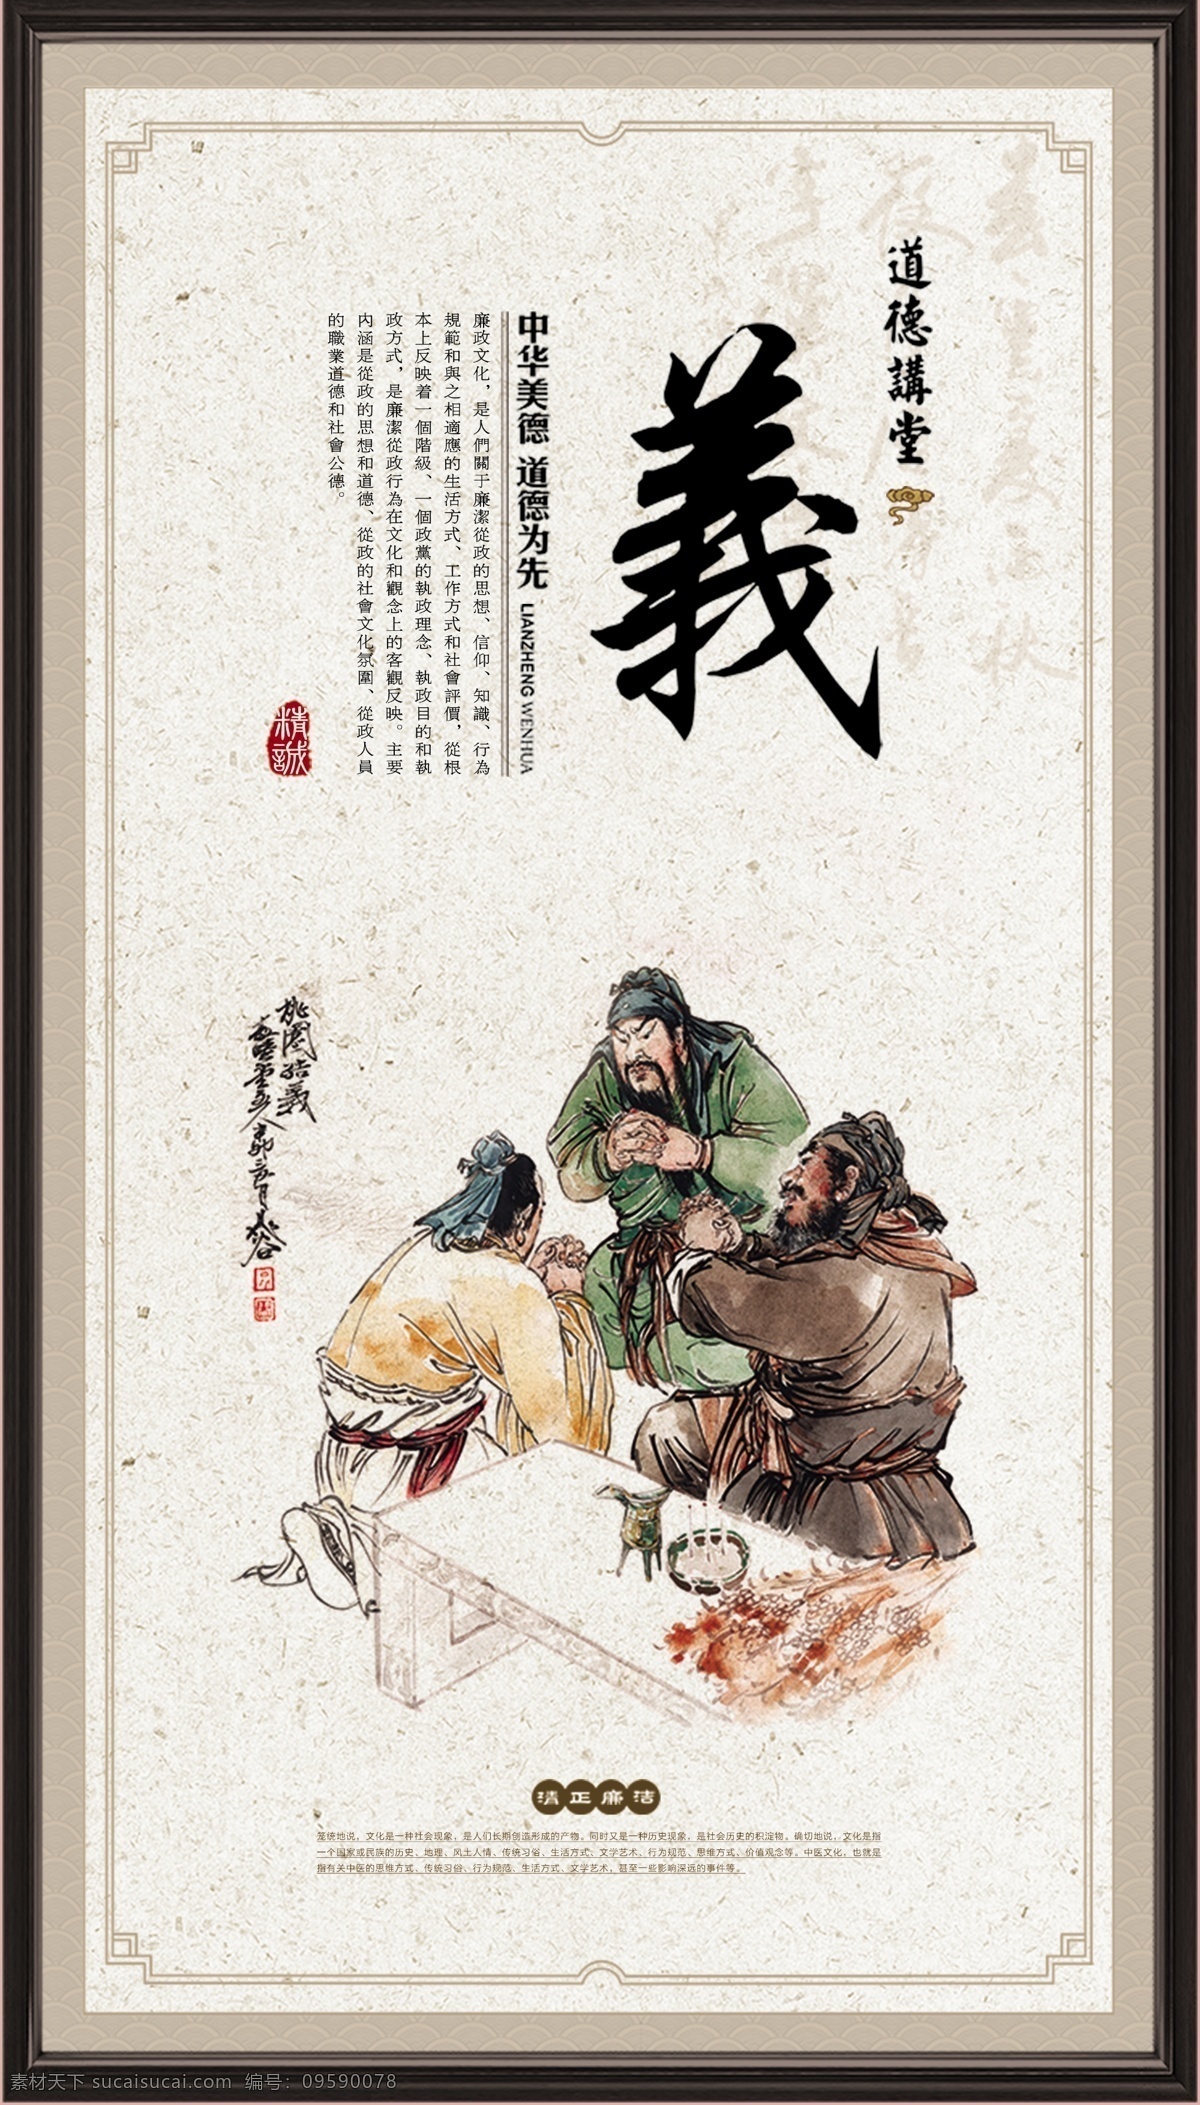 传统美德义 美德 传统美德 义字海报 中国文化 校园文化